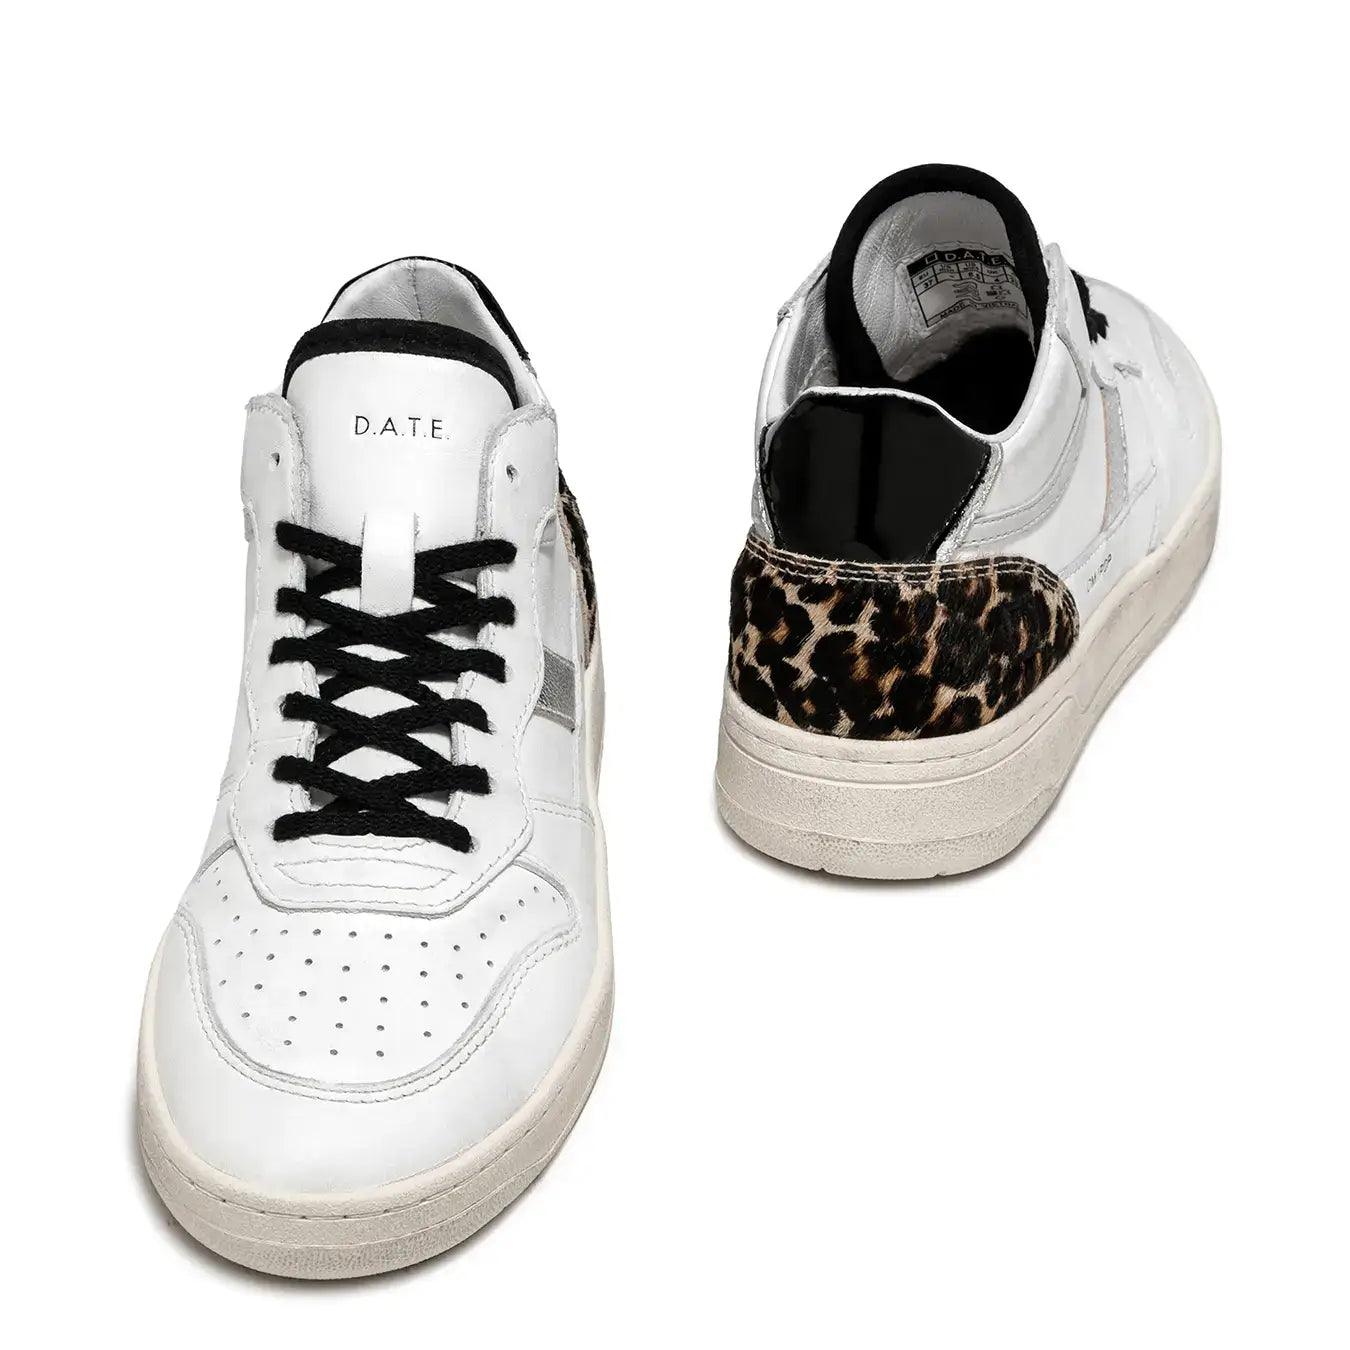 D.A.T.E. Scarpe Sneaker Court Donna, Pelle, Bianco, Animalier, tallone cavallino leopardato | bassiniboutique.it